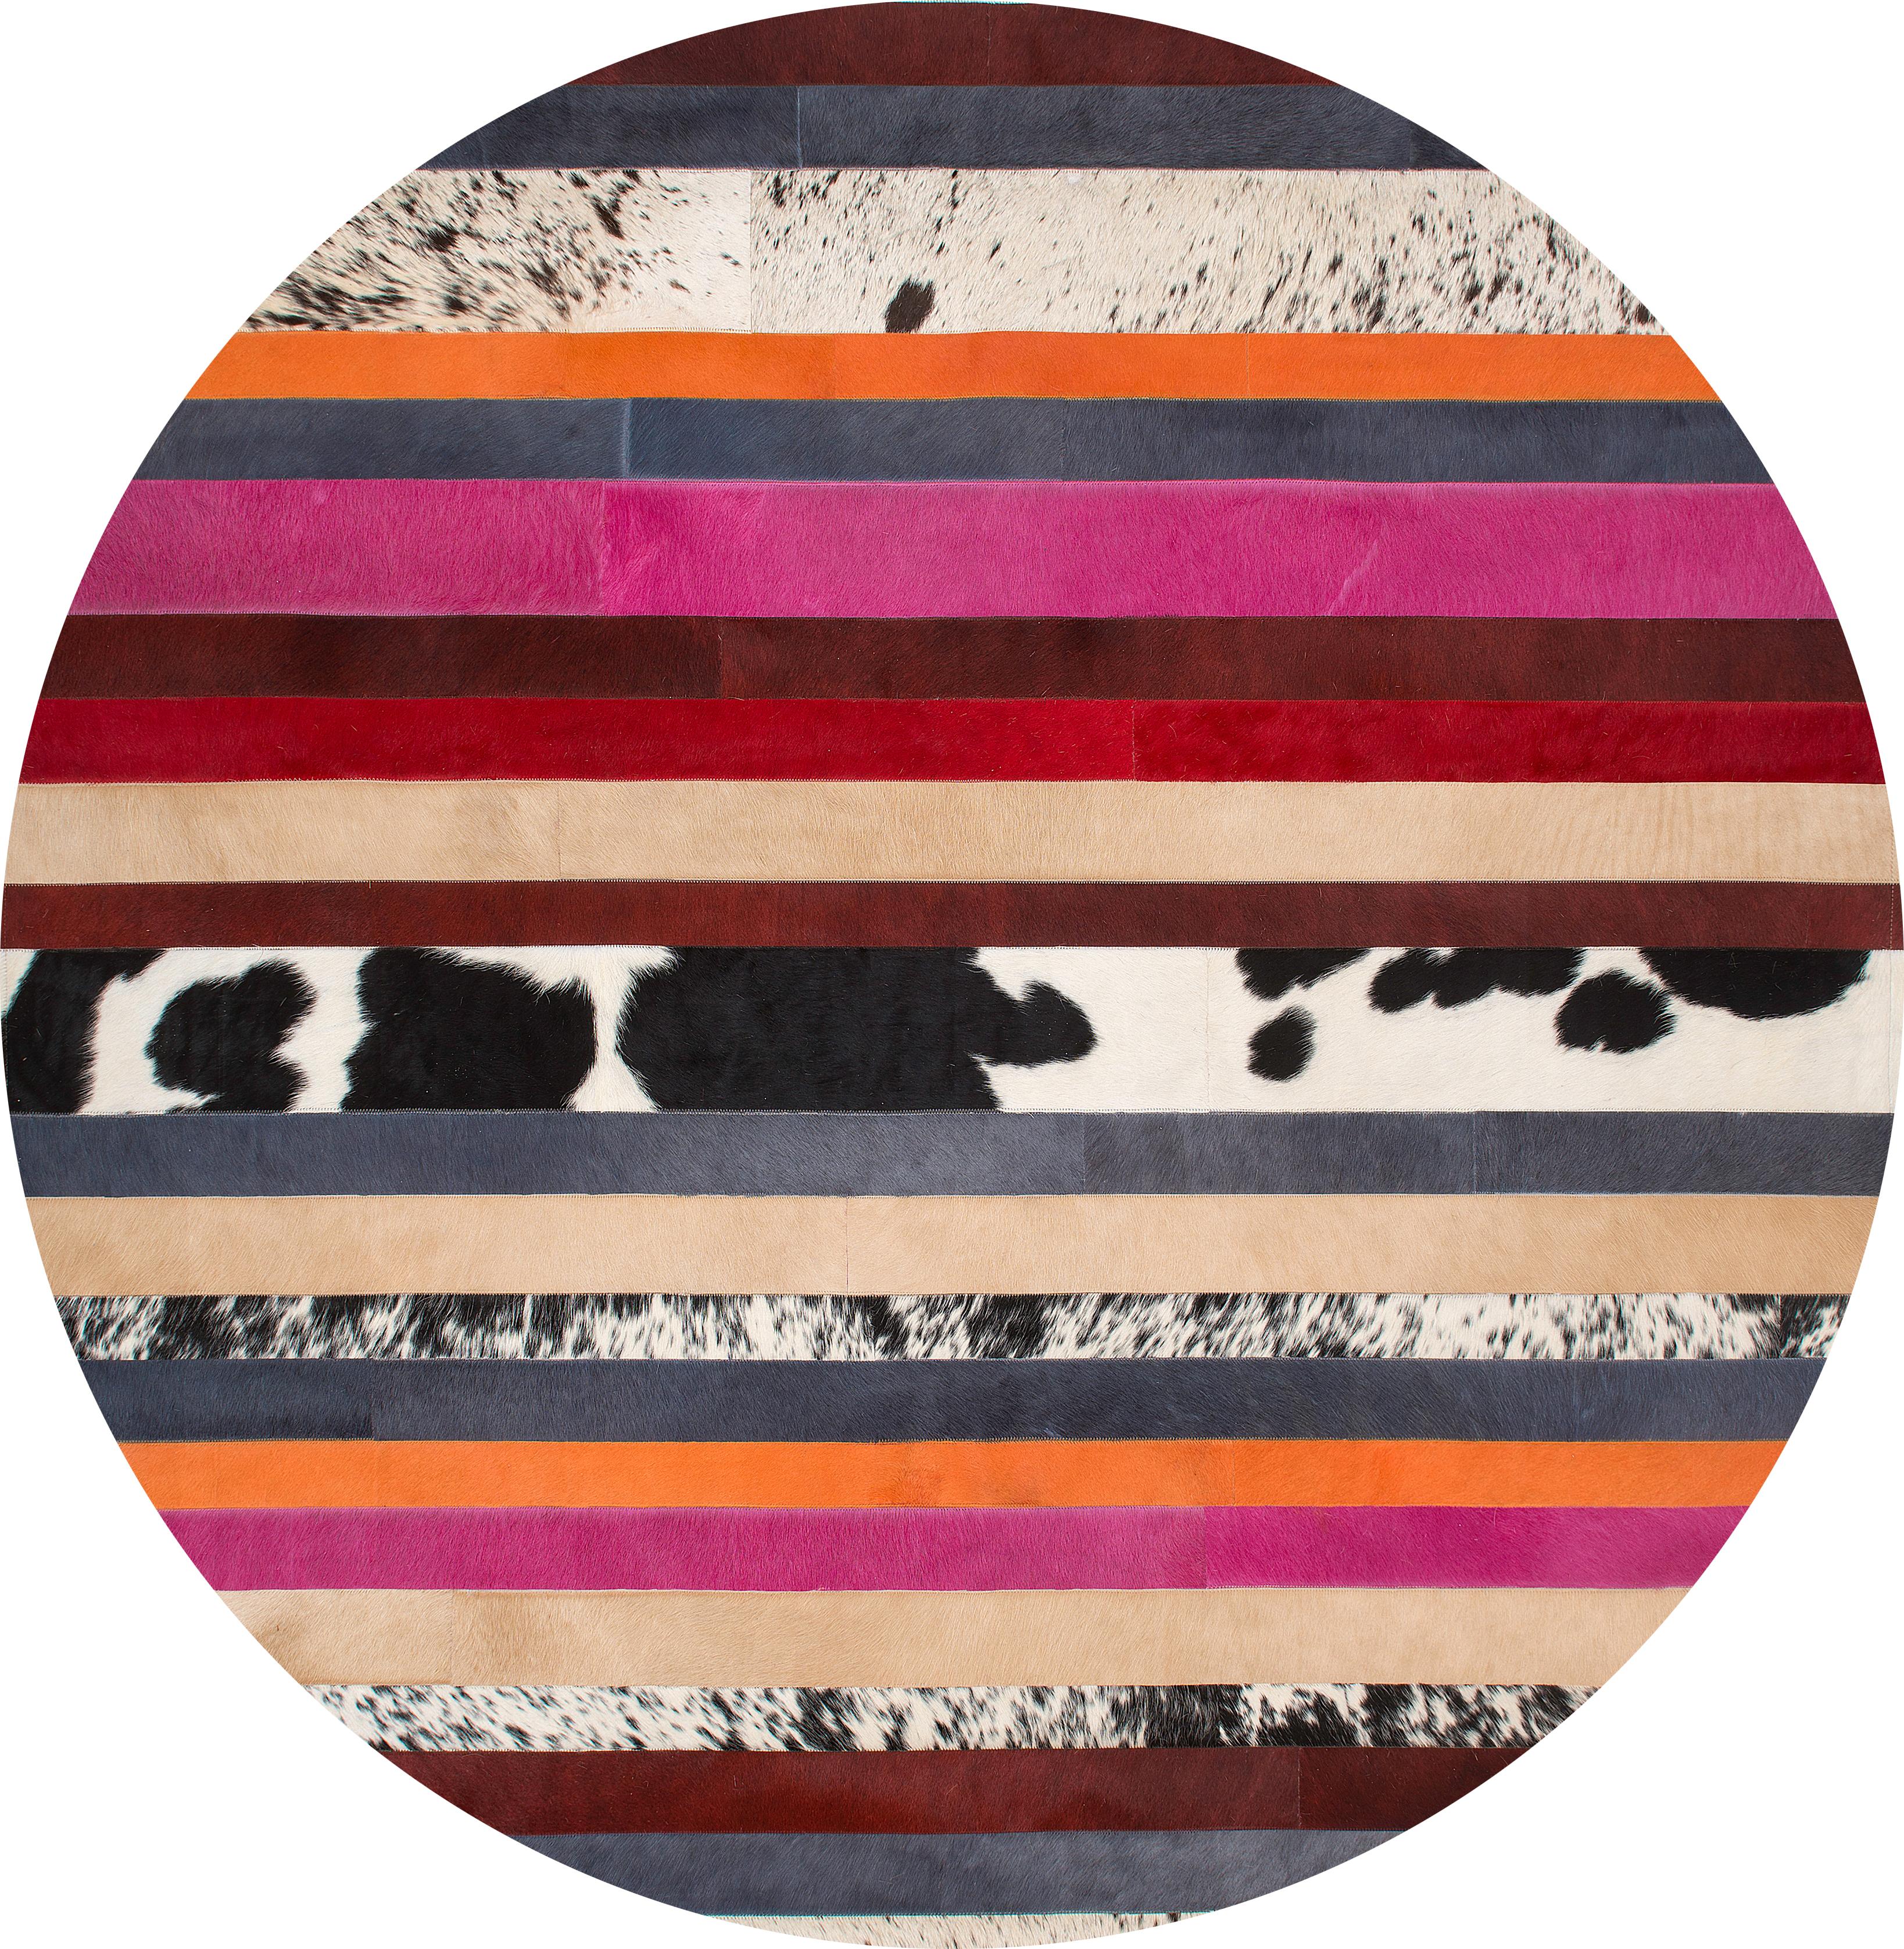 Pakistani Pink & Black Striped Round Customizable Nueva Raya Cowhide Area Floor Rug Medium For Sale